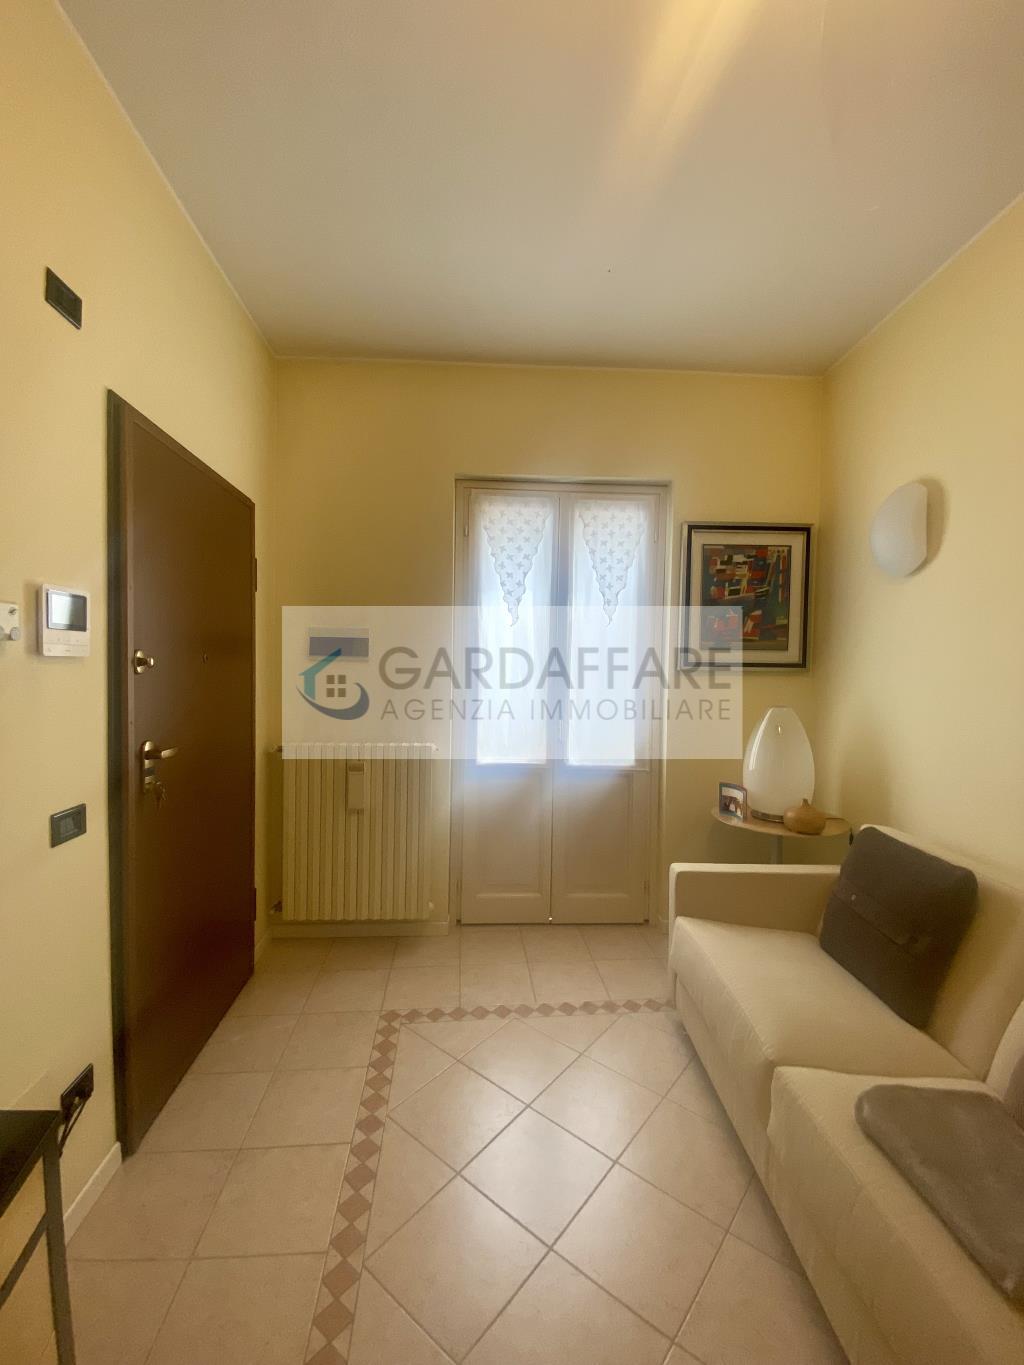 Flat for Buy in Desenzano del Garda - Cod. h53-22-31